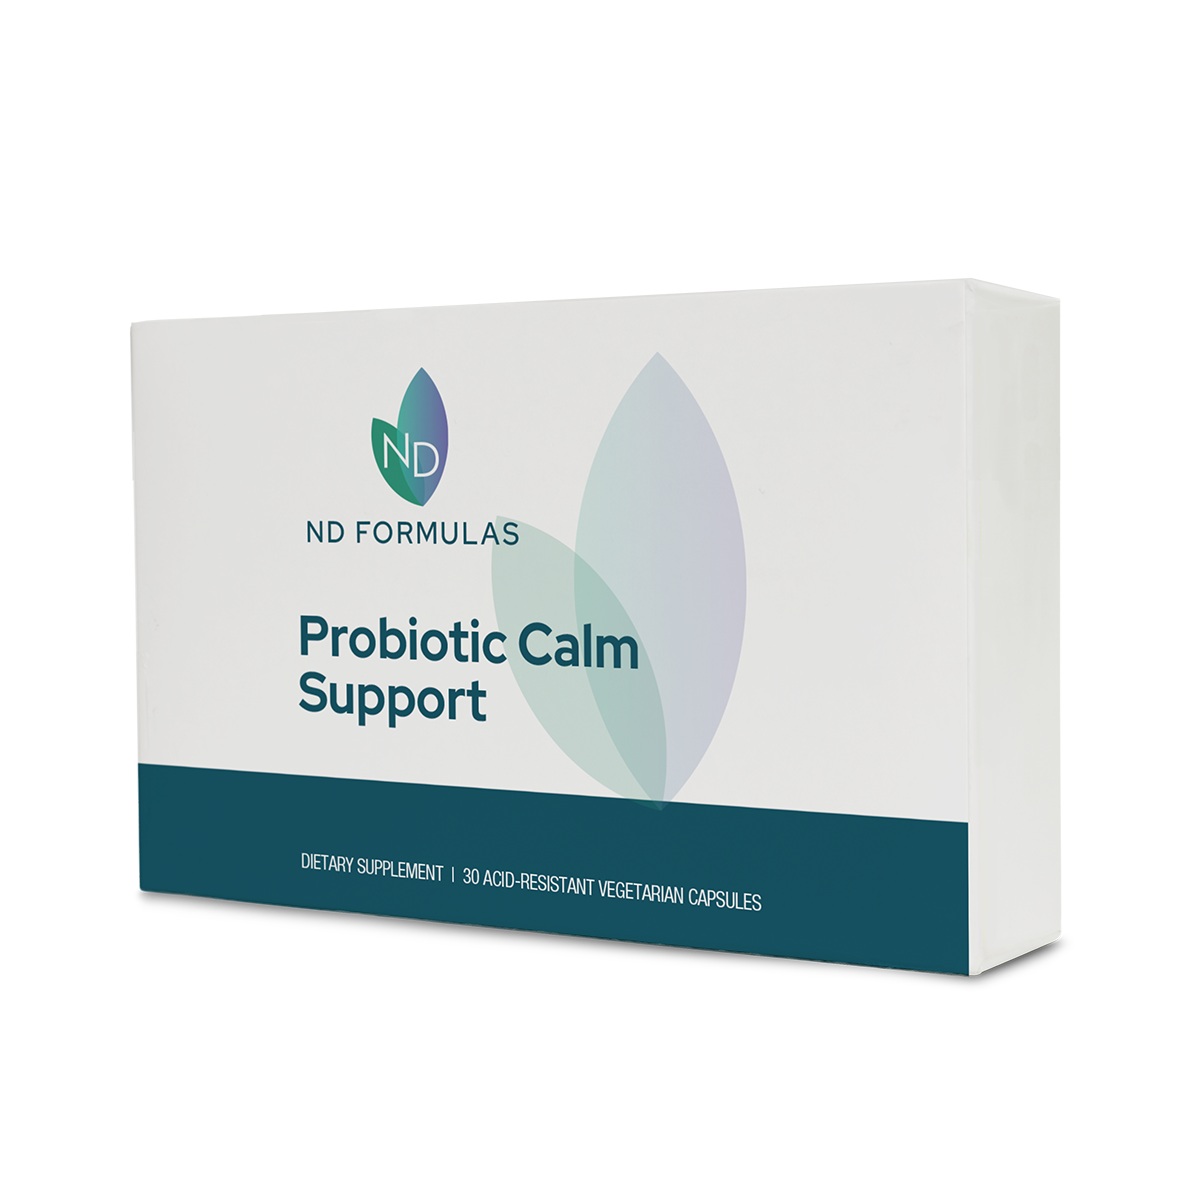 Probiotic Calm Support